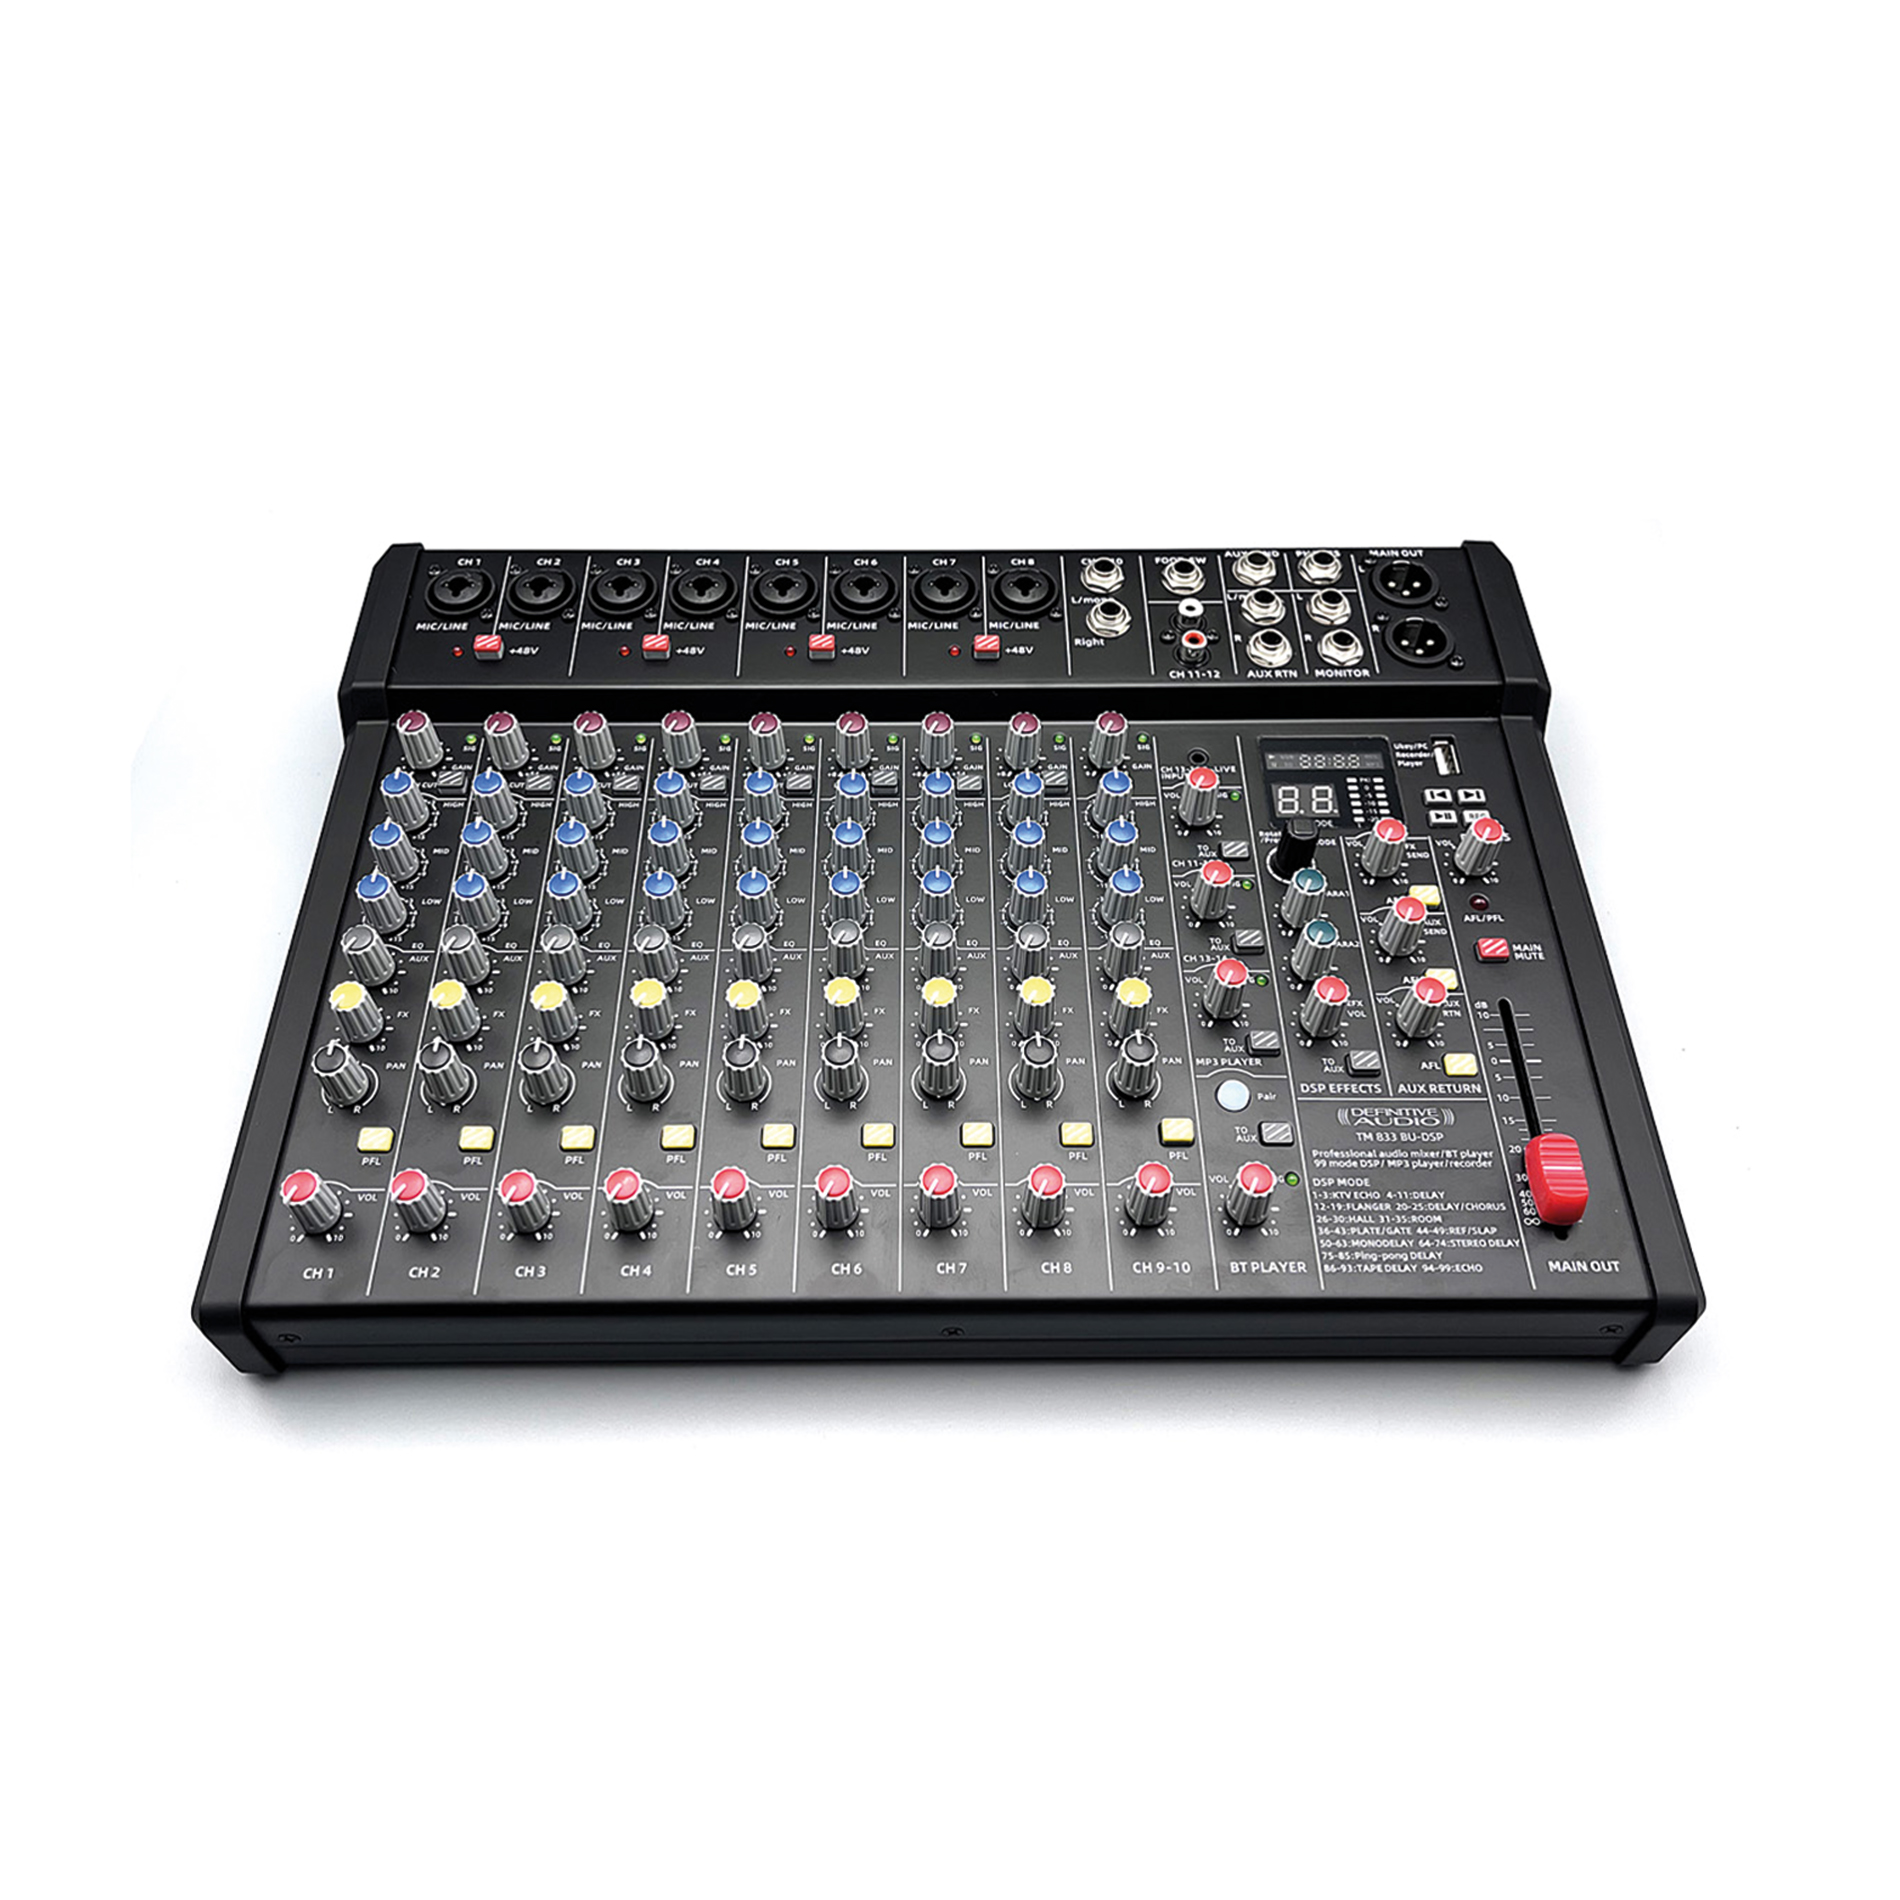 Definitive Audio Tm 833 Bu-dsp - Table De Mixage Analogique - Variation 8